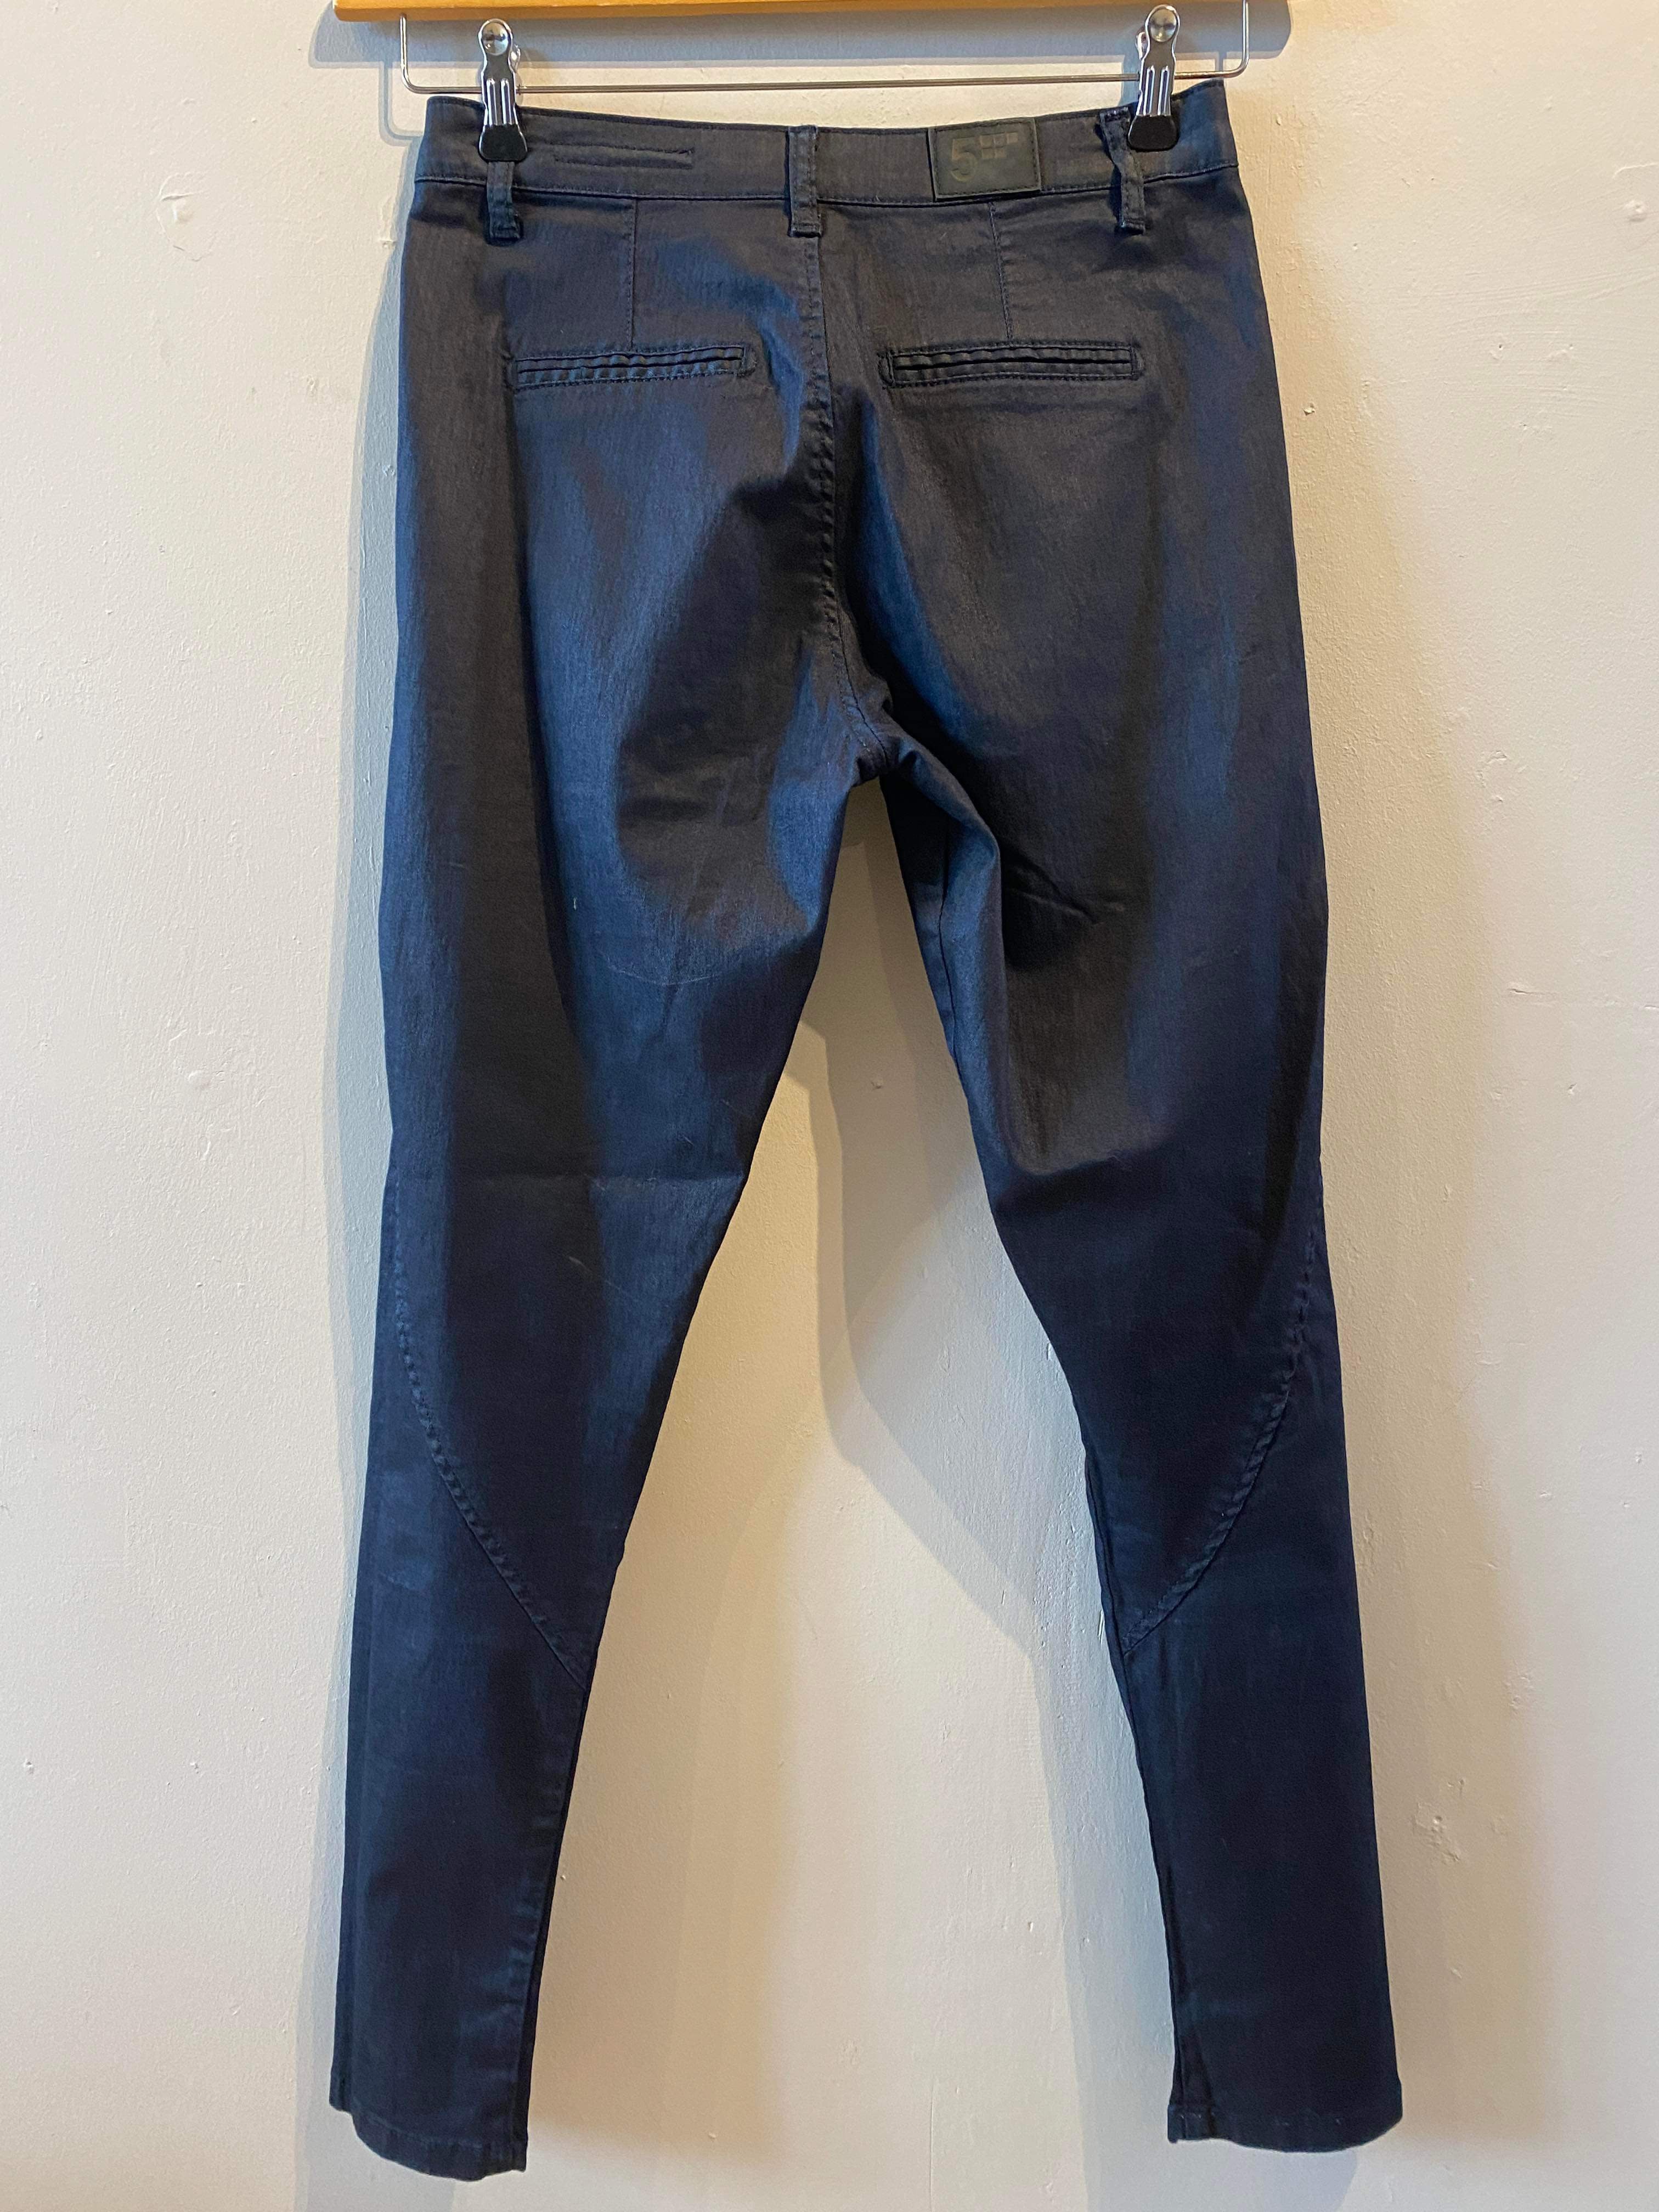 Five Units - Jeans - Size: 27